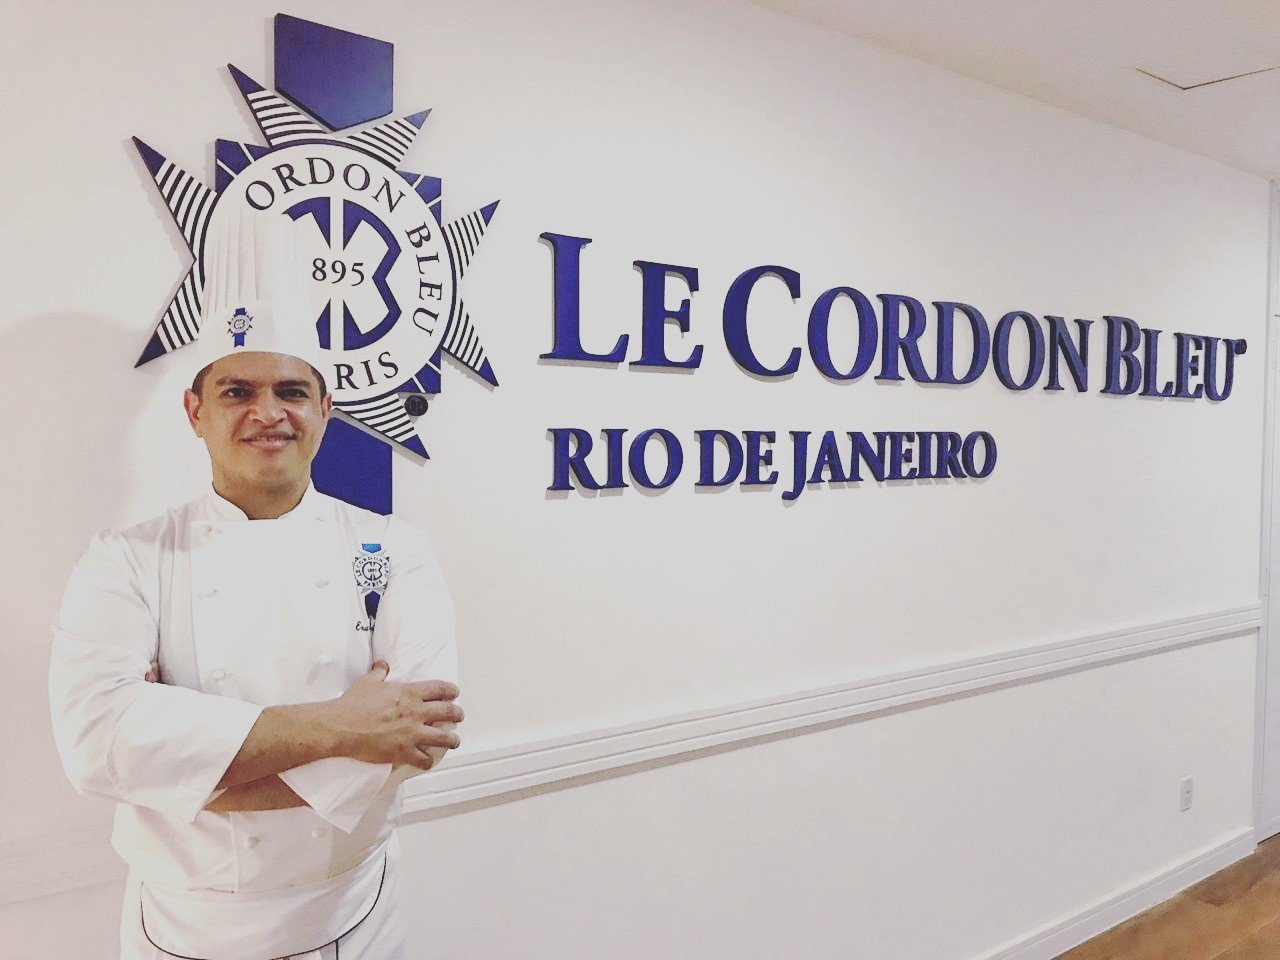 Novo Chef de Pâtisserie no Instituto do Rio de Janeiro - Veja a entrevista com Emanuel Pinheiro